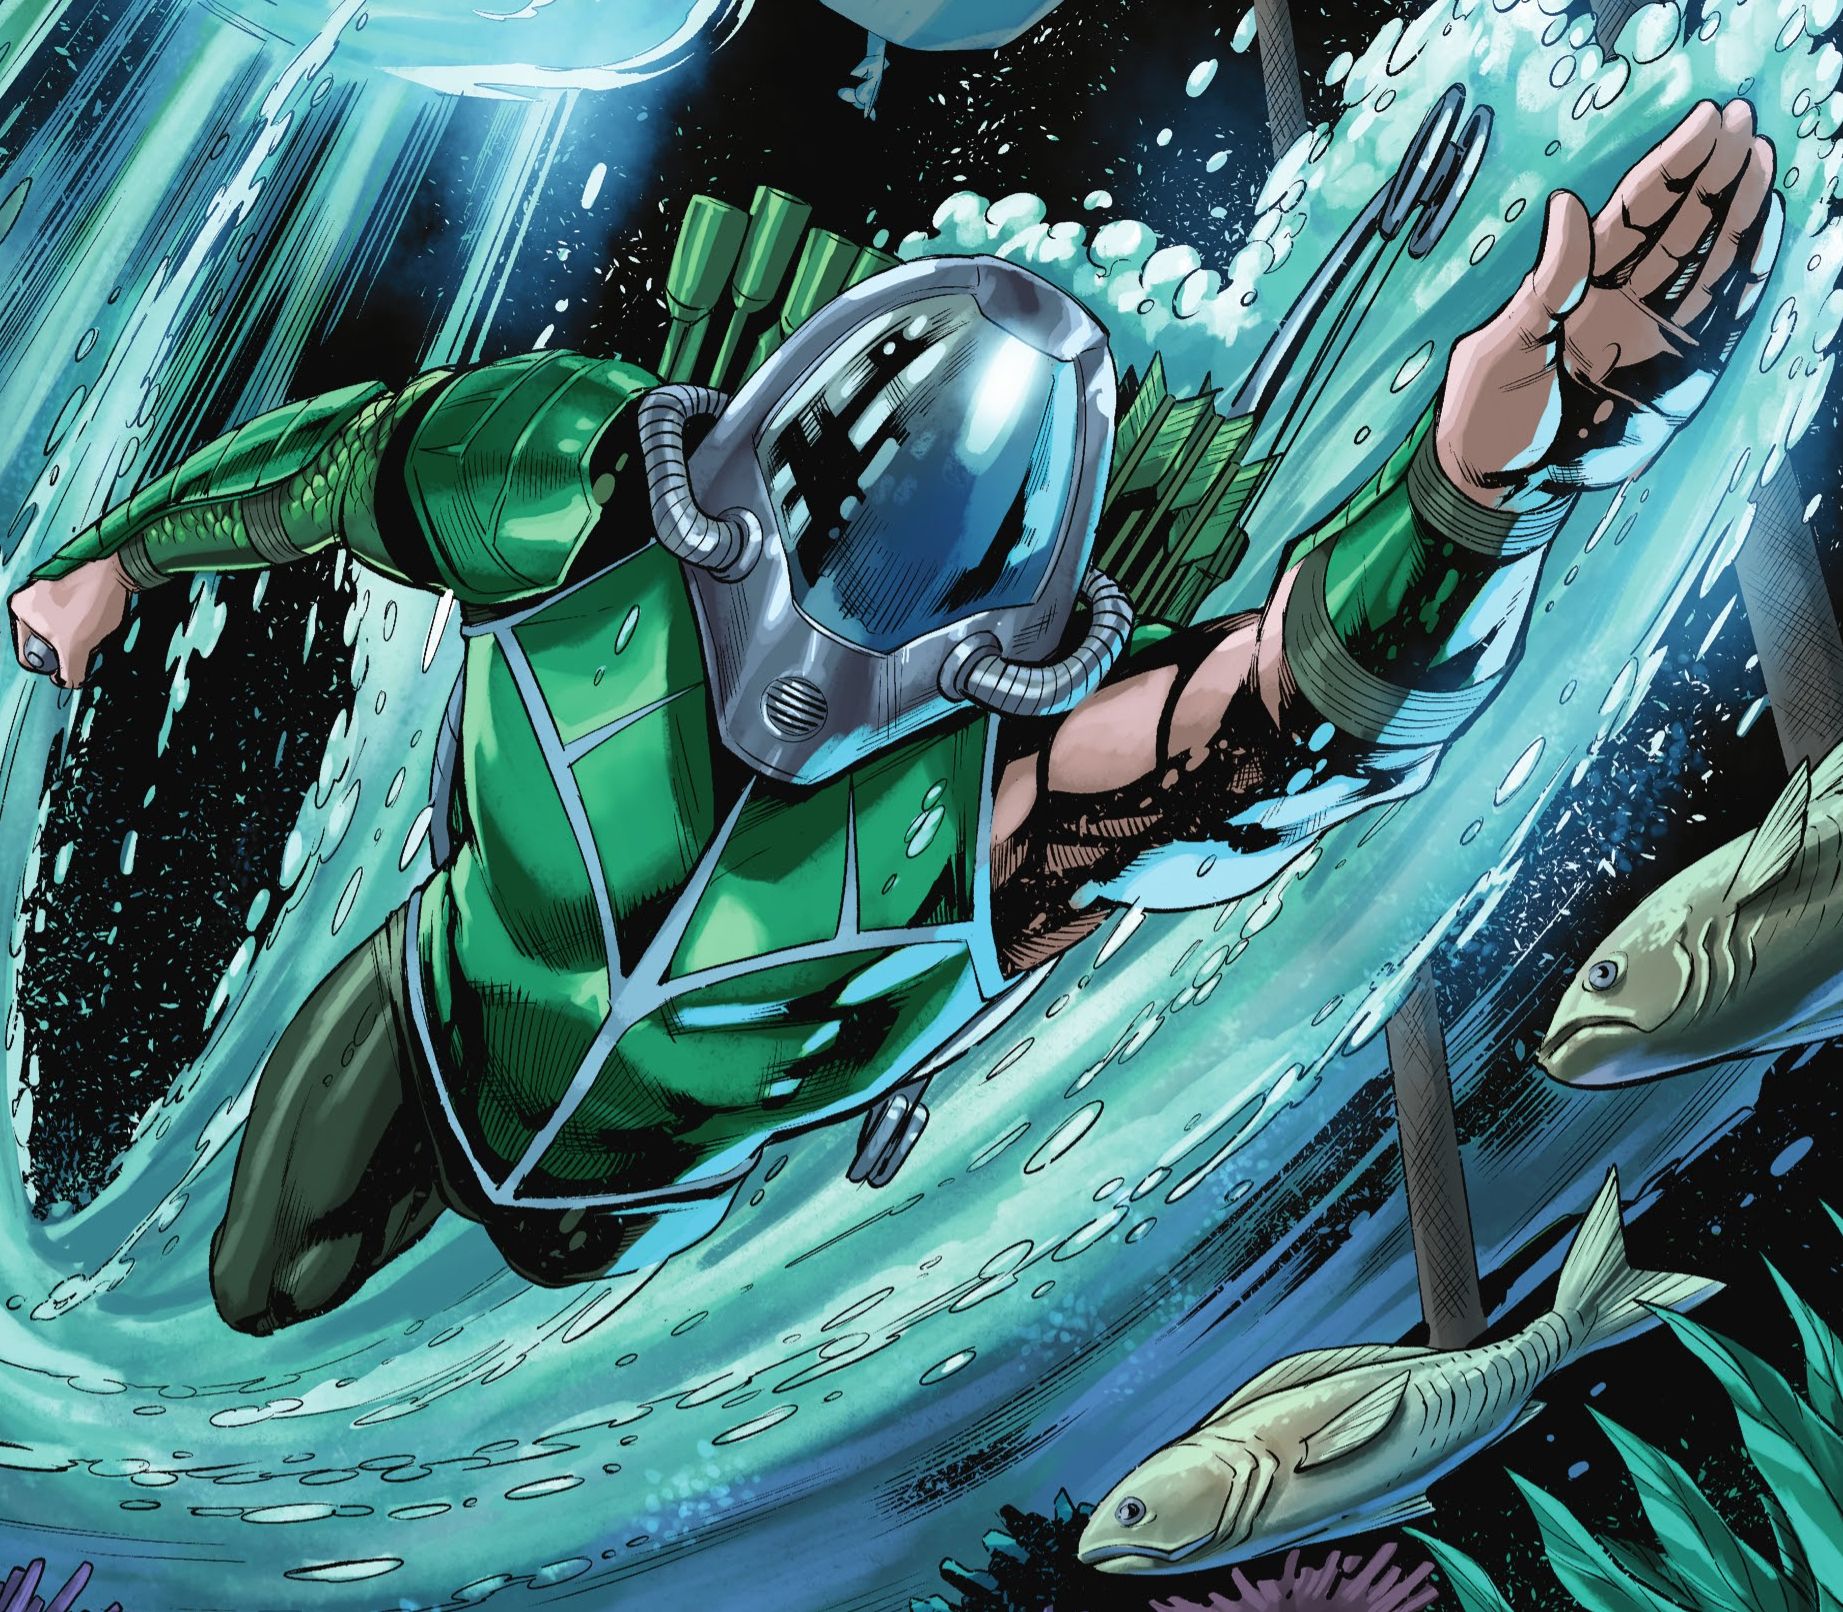 Arthur CUrry, as the Green Arrow, swims to Atlantis